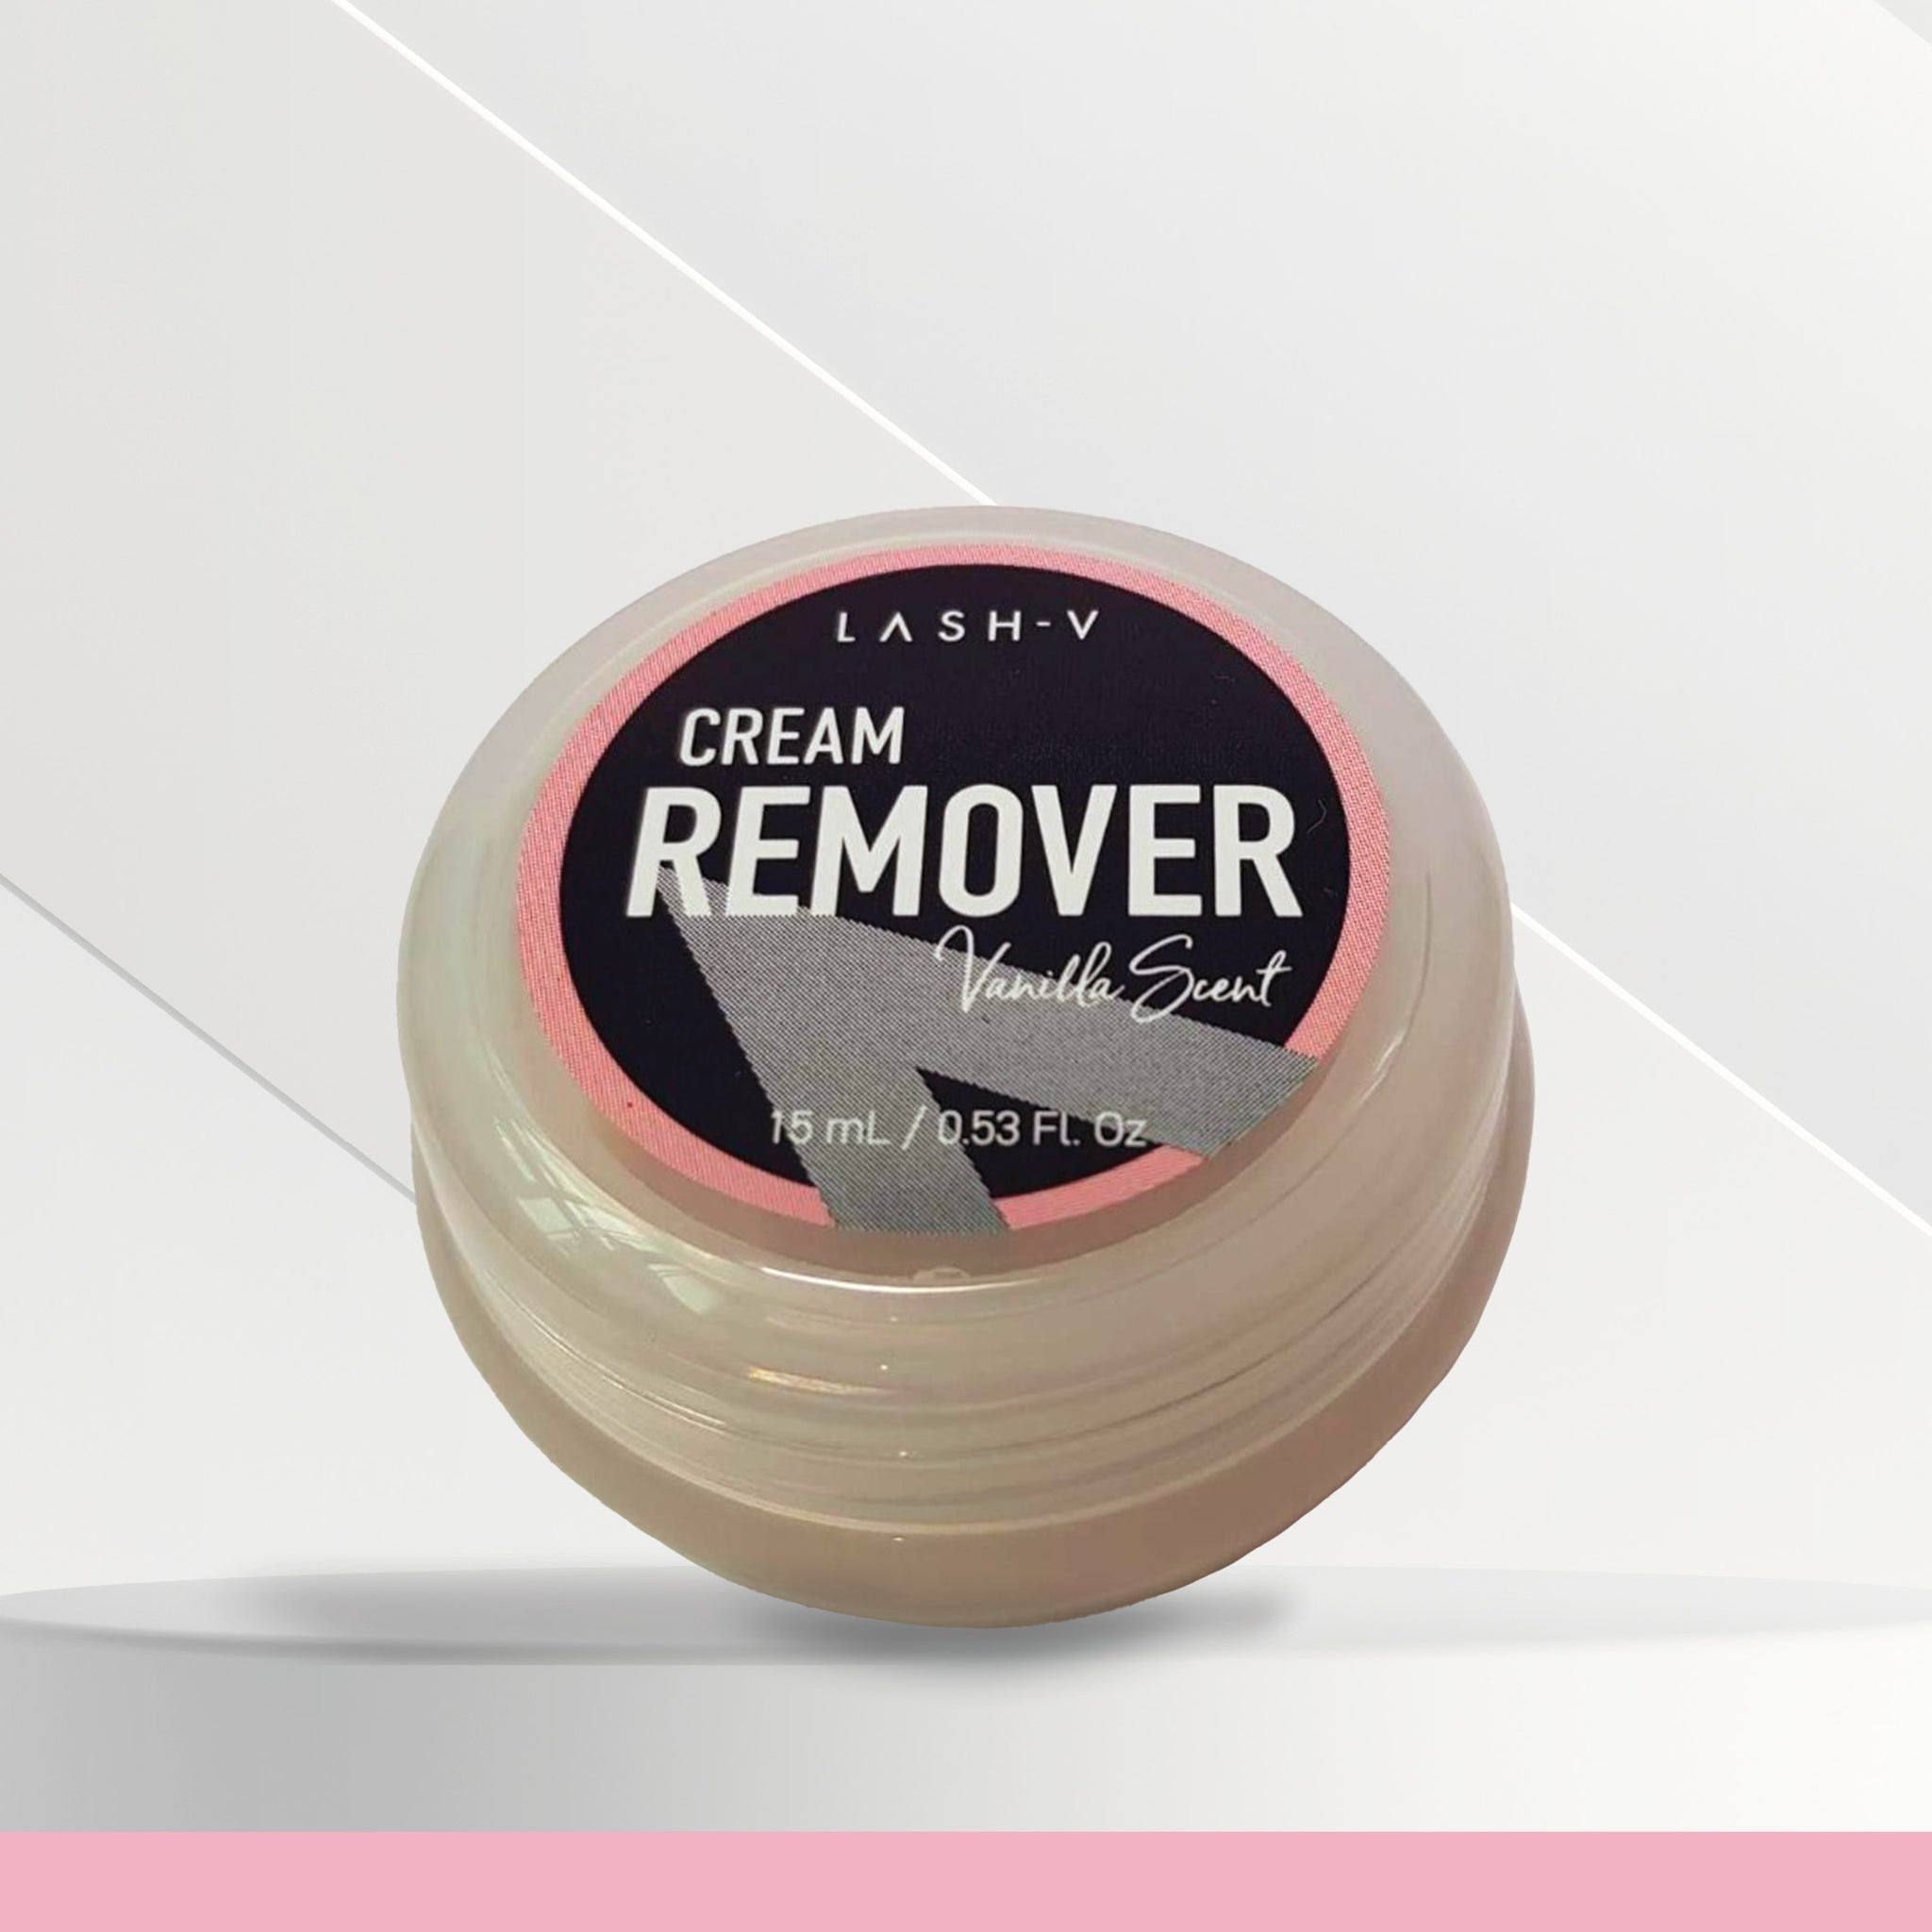 Cream Remover - Vanilla Scent | Lash Supplies